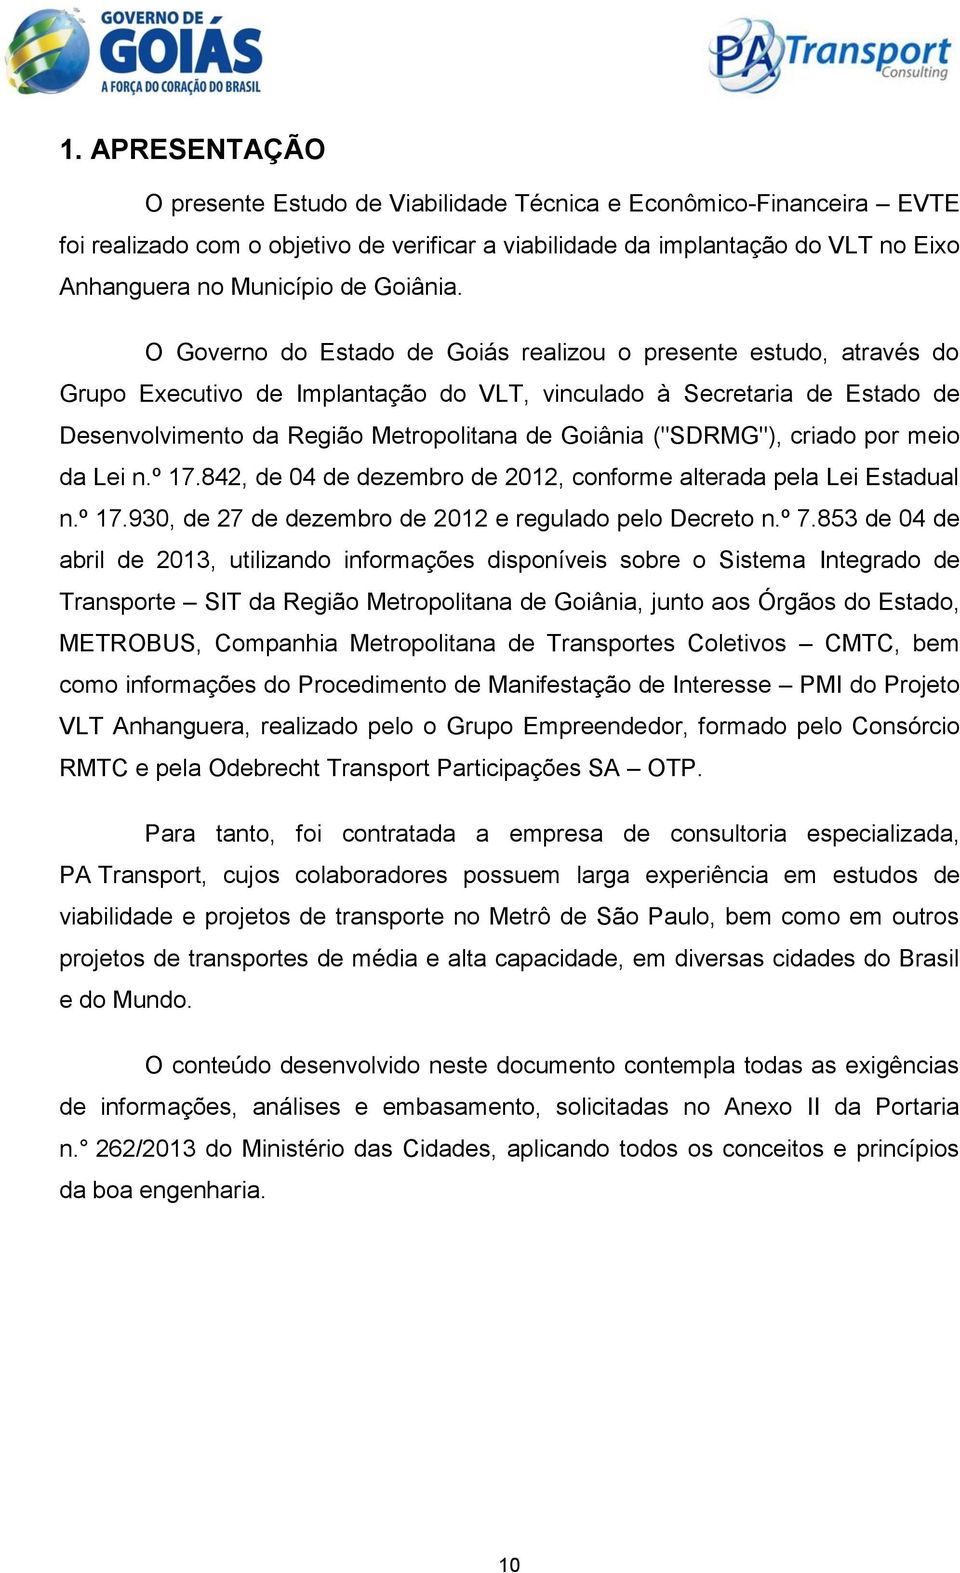 O Governo do Estado de Goiás realizou o presente estudo, através do Grupo Executivo de Implantação do VLT, vinculado à Secretaria de Estado de Desenvolvimento da Região Metropolitana de Goiânia